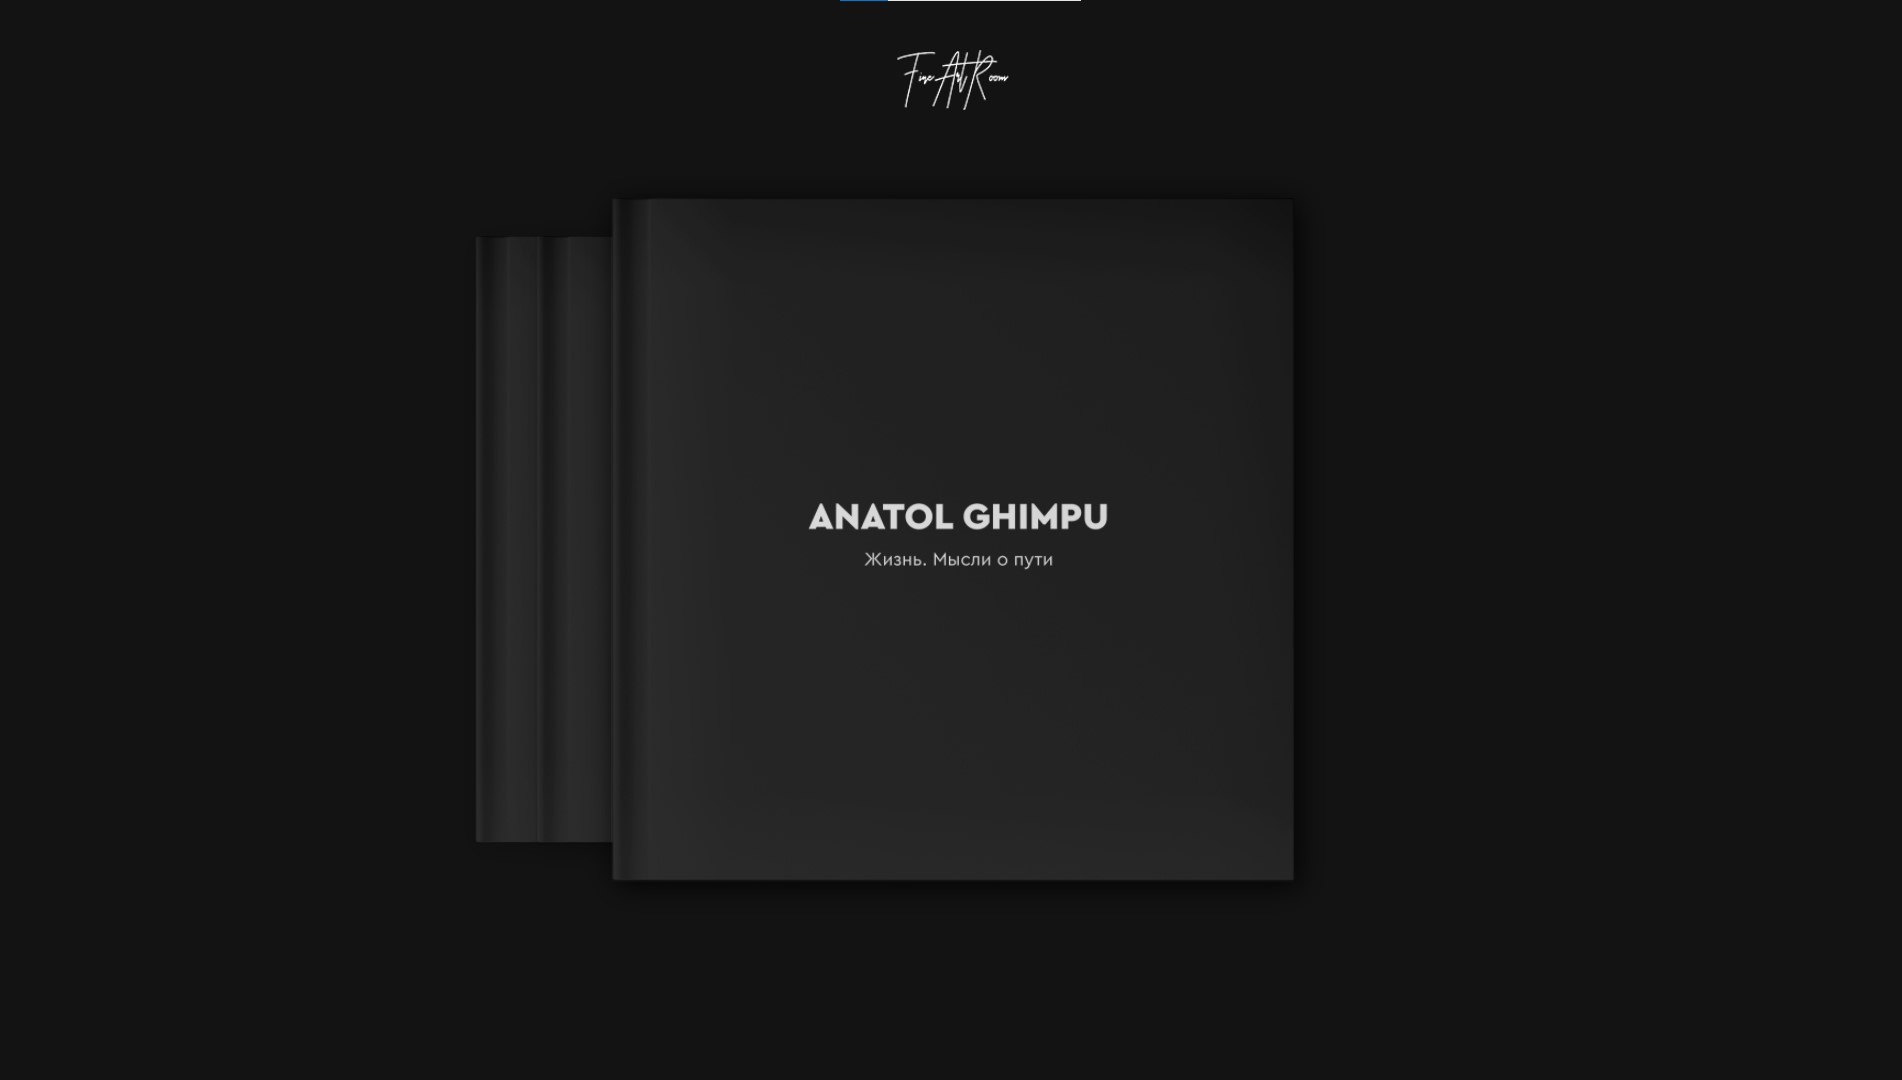 Anatol ghimpu – catalogue all winners animation